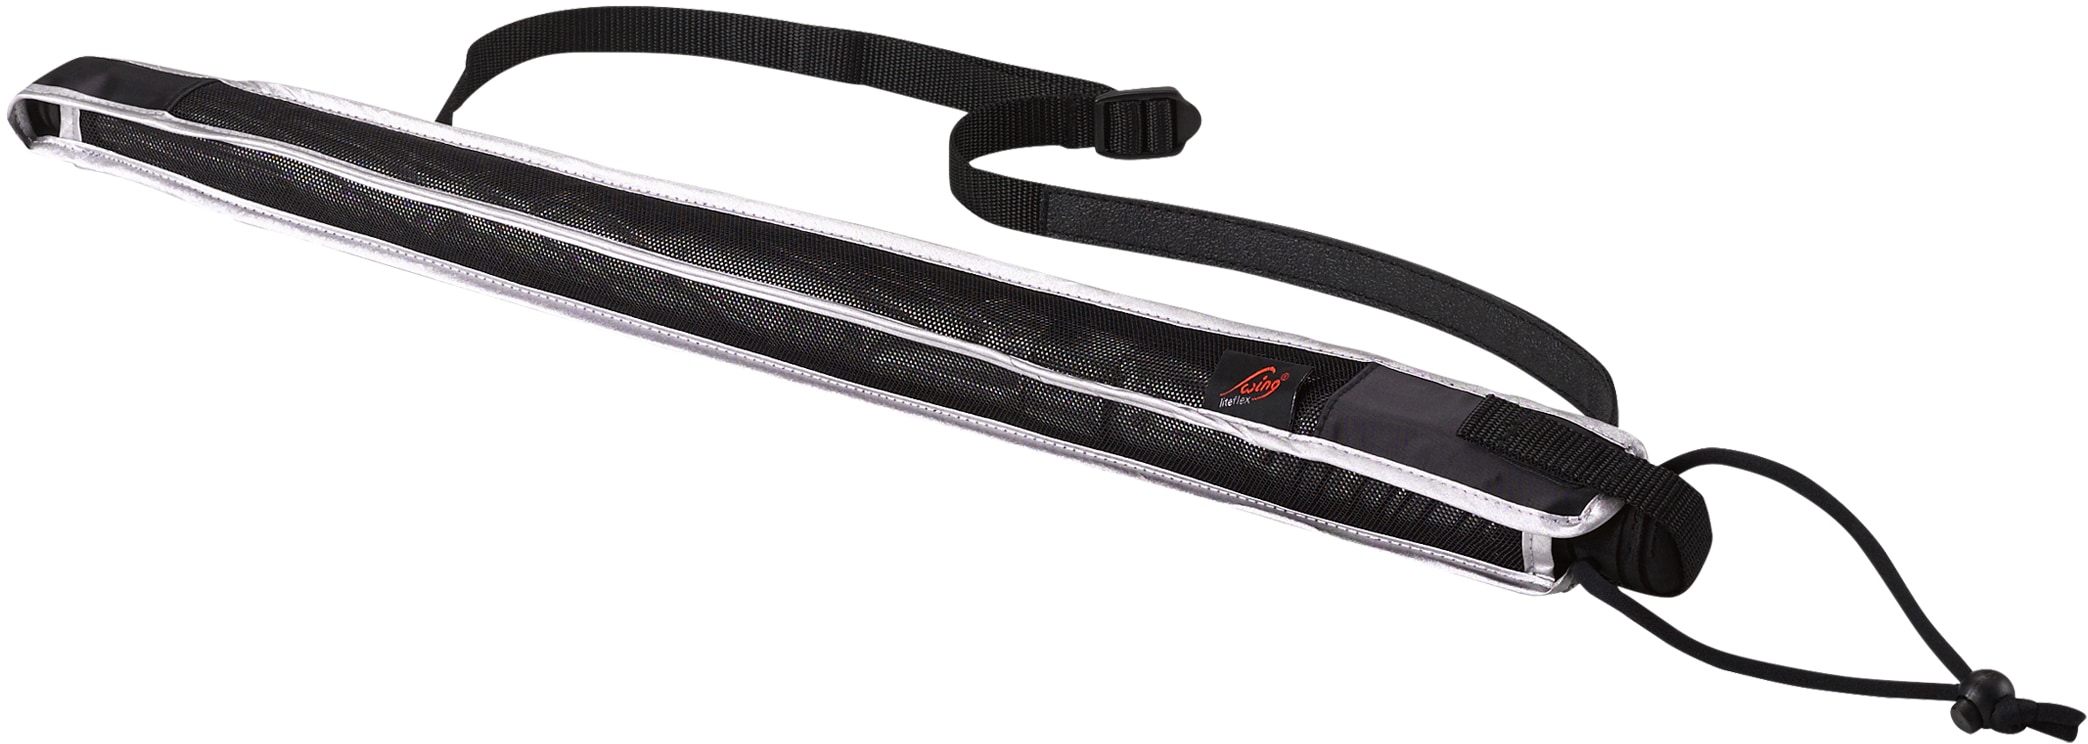 silber«, Stockregenschirm »Swing kaufen leicht 50+, mit EuroSCHIRM® liteflex, extra günstig UV-Lichtschutzfaktor